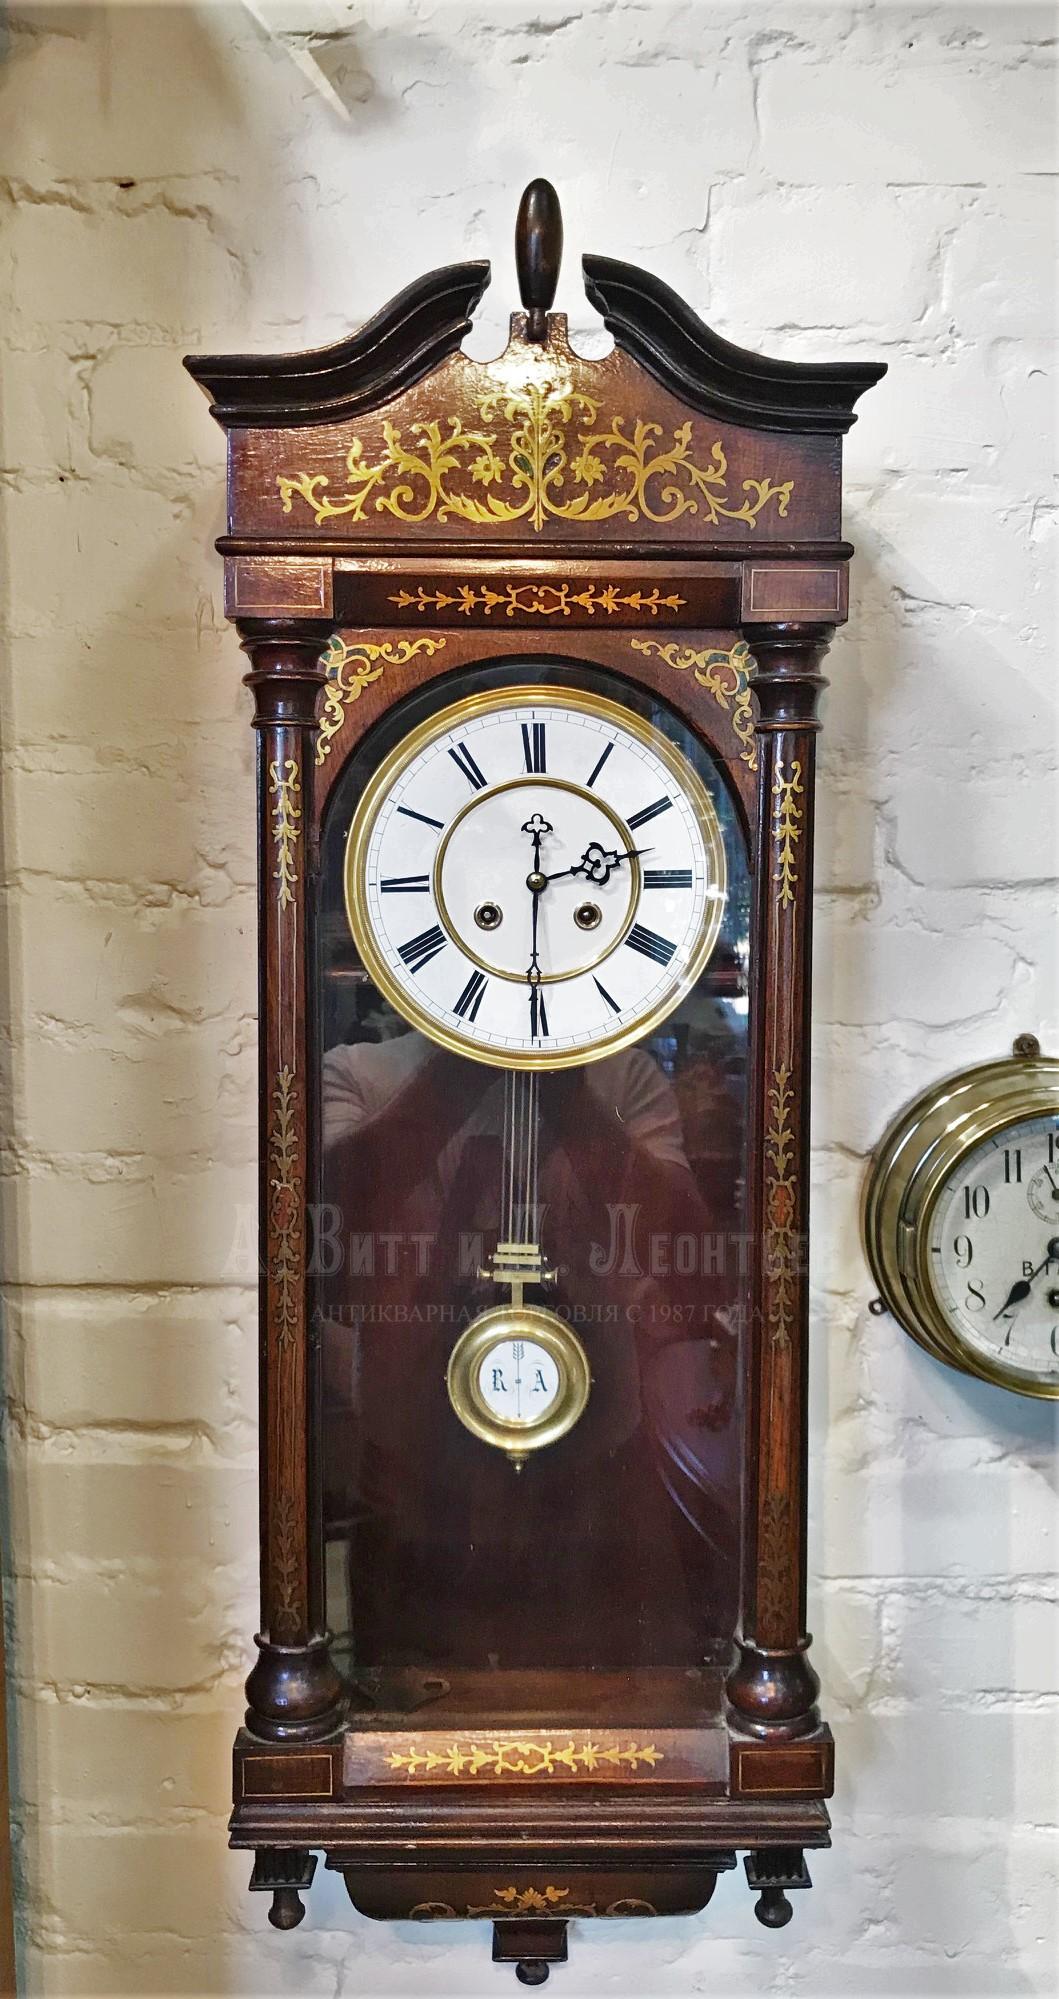 Настенные антикварные русские часы с боем в инкрустированном латунью корпусе